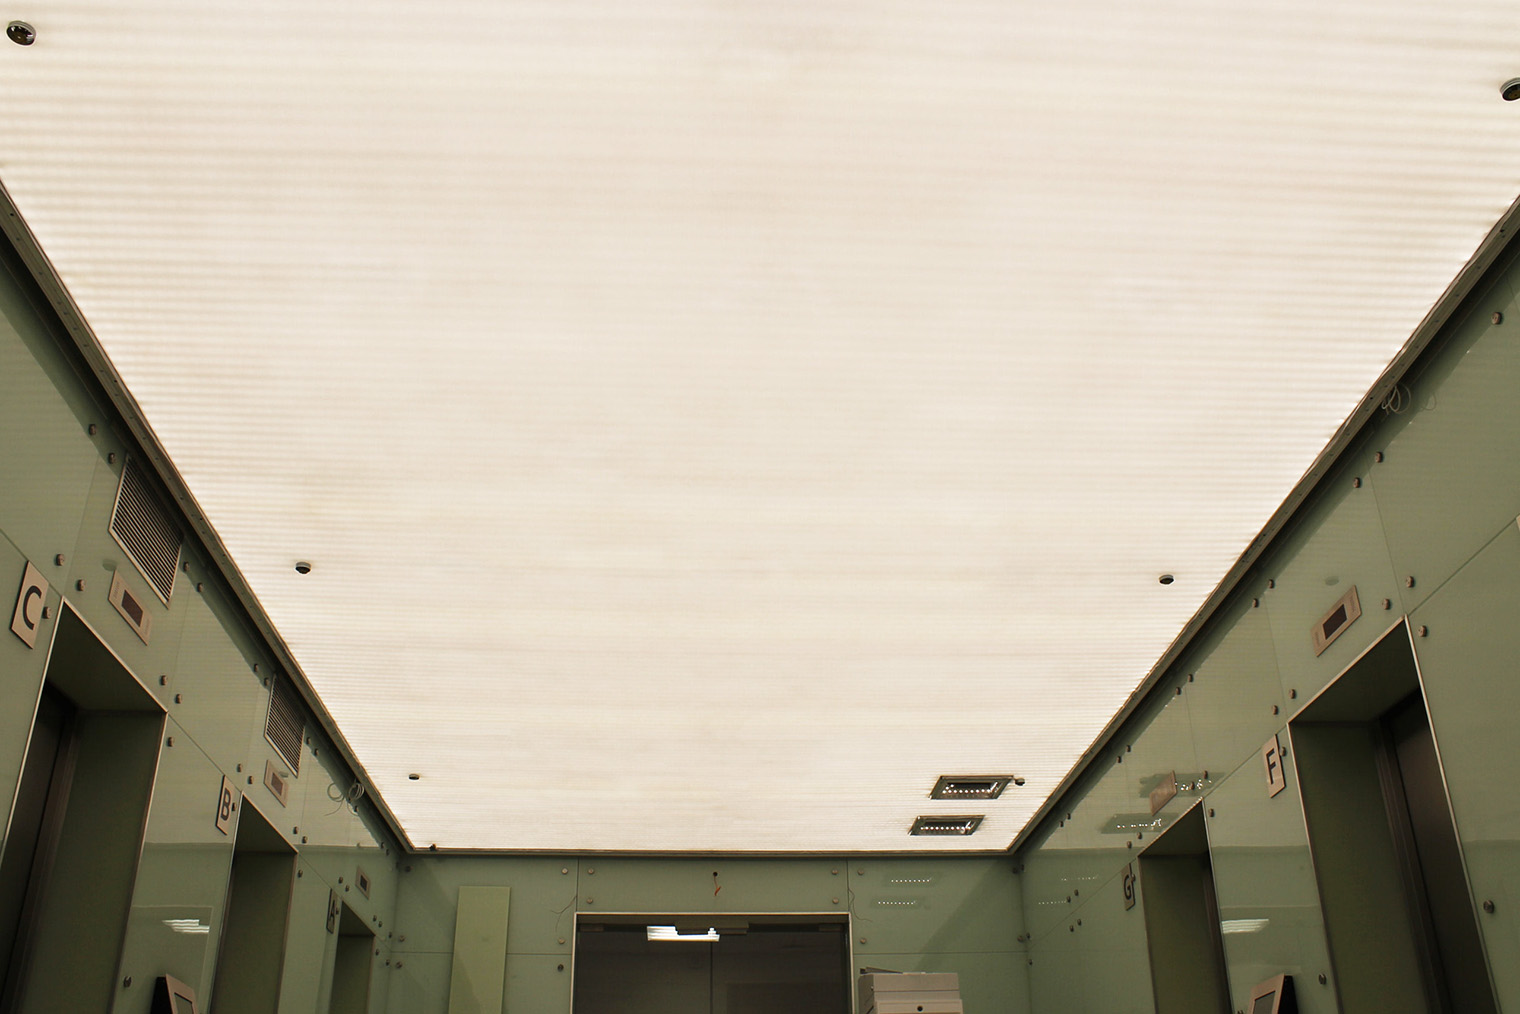 Тканевый натяжной потолок немецкой компании Pongs с подсветкой — такой установили в 2020 году в холле телеканала «Пятница». Фотография: pongs.com